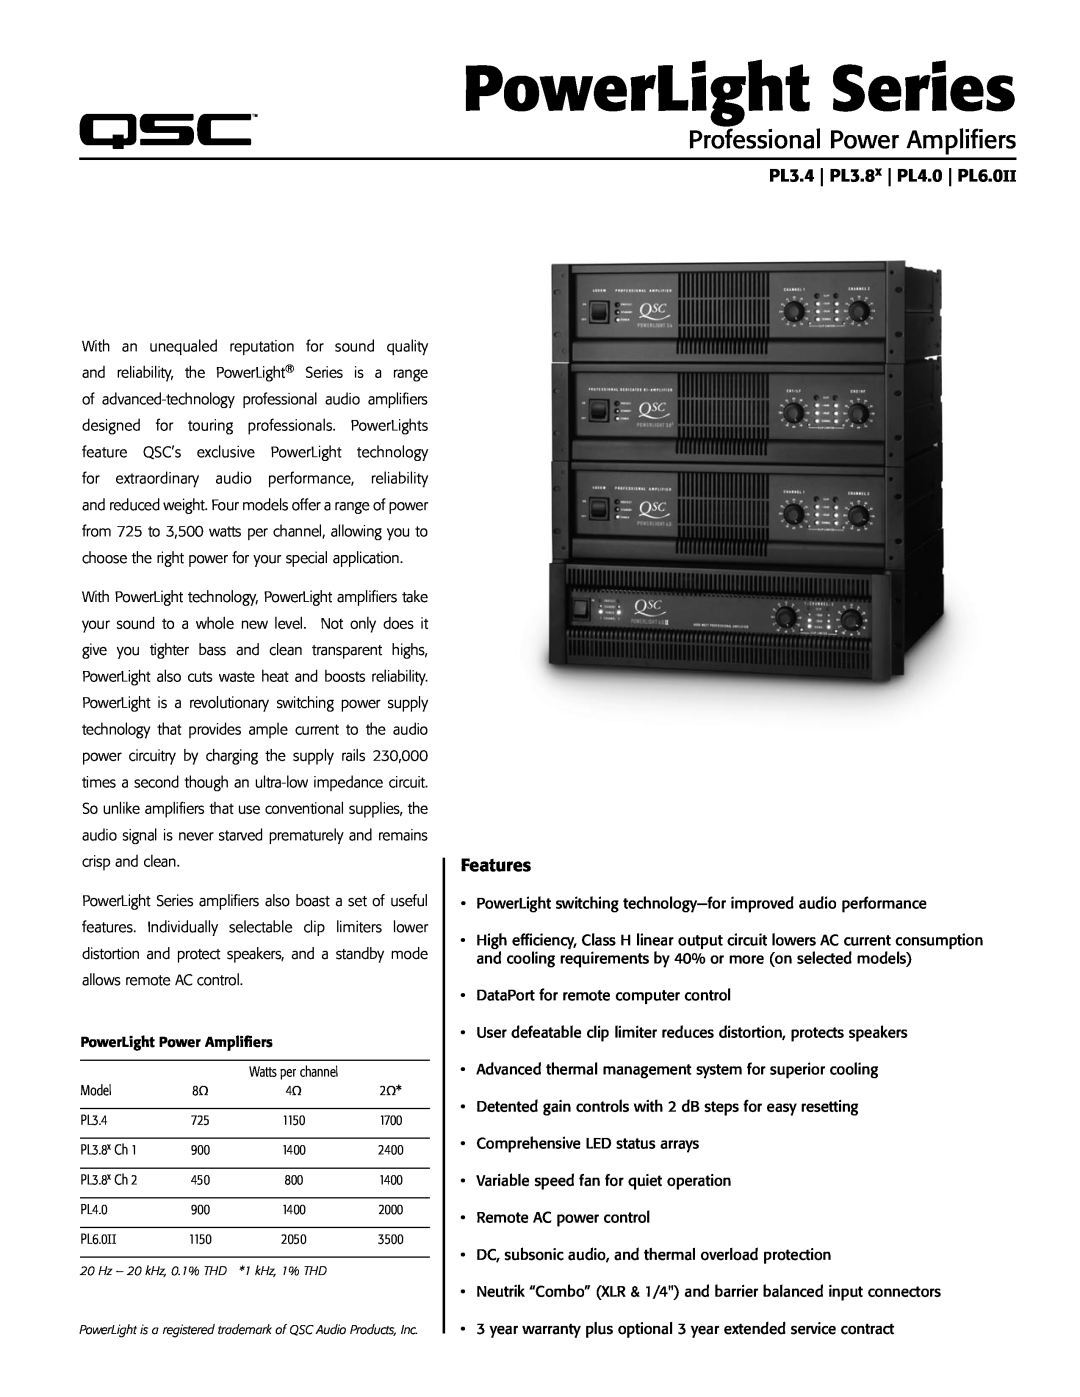 QSC Audio warranty PL3.4 PL3.8x PL4.0 PL6.0II, Features, PowerLight Series, Professional Power Amplifiers 